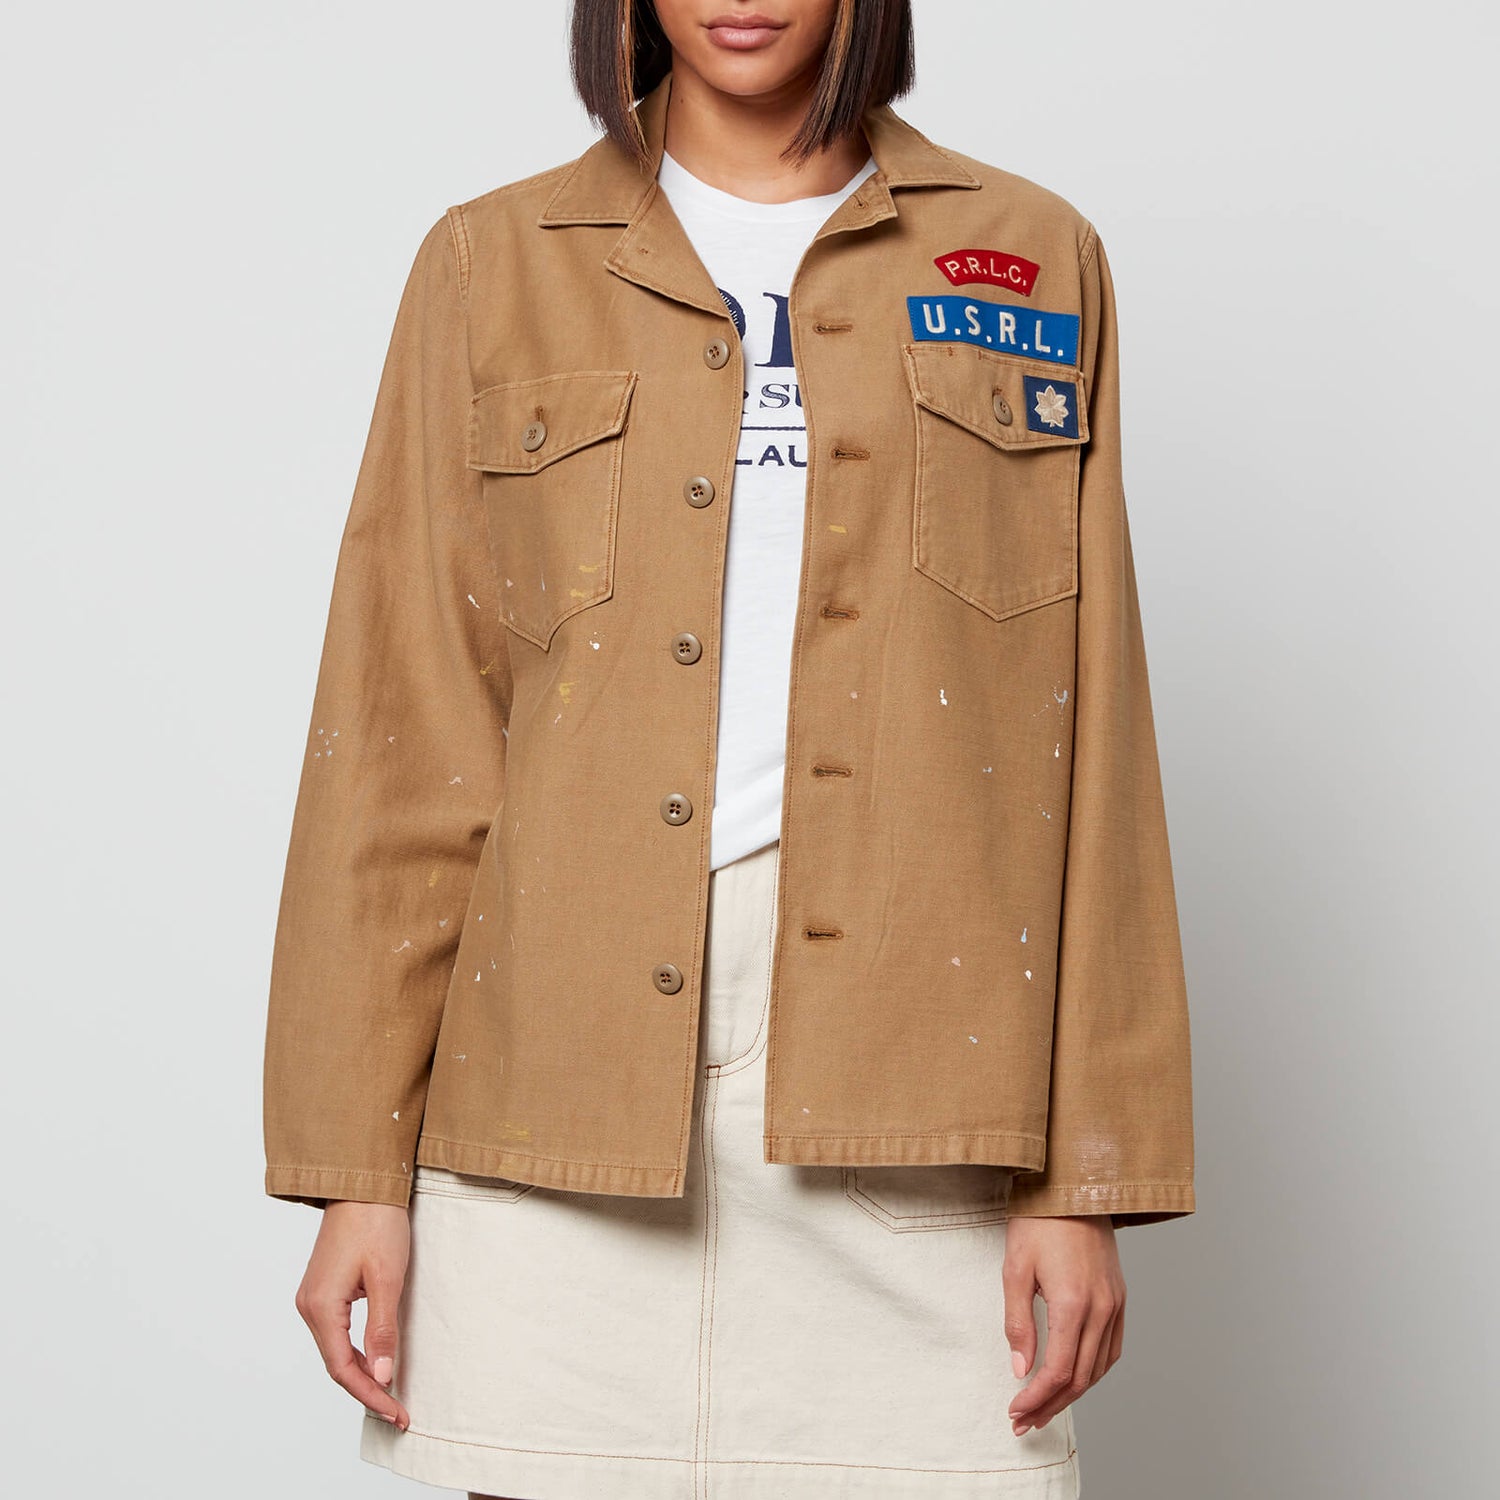 Polo Ralph Lauren Women's Utility Shirt Jacket - New Ghurka - L